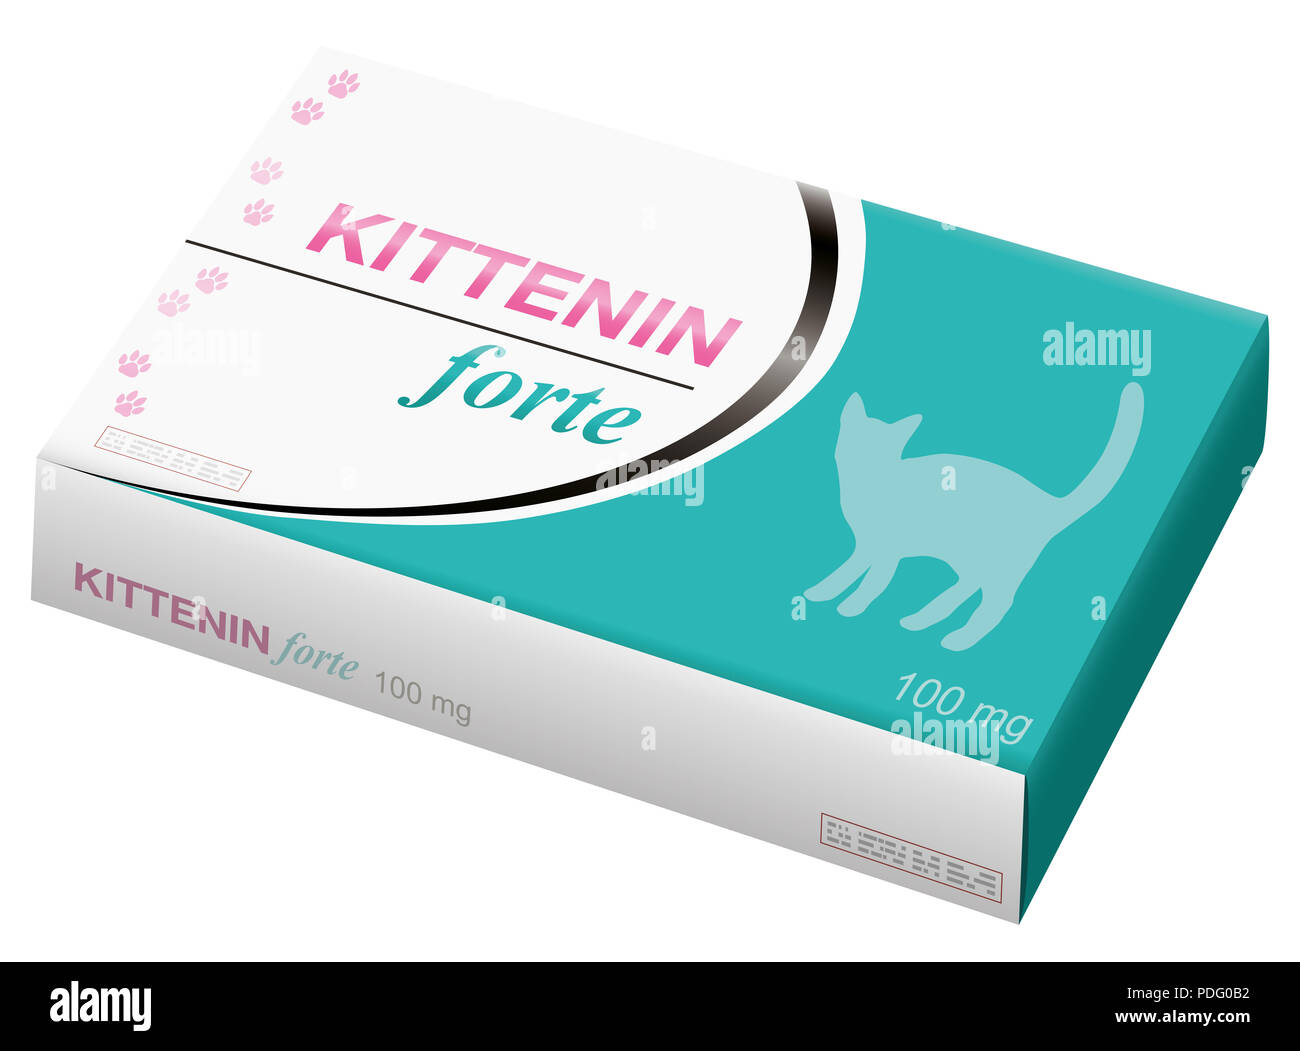 Katzen Medizin mit Silhouette und Titel einer Katze. Tiermedizinische gefälschten Produkt mit dem Namen KITTENIN FORTE - Abbildung auf weißen backgro Stockfoto